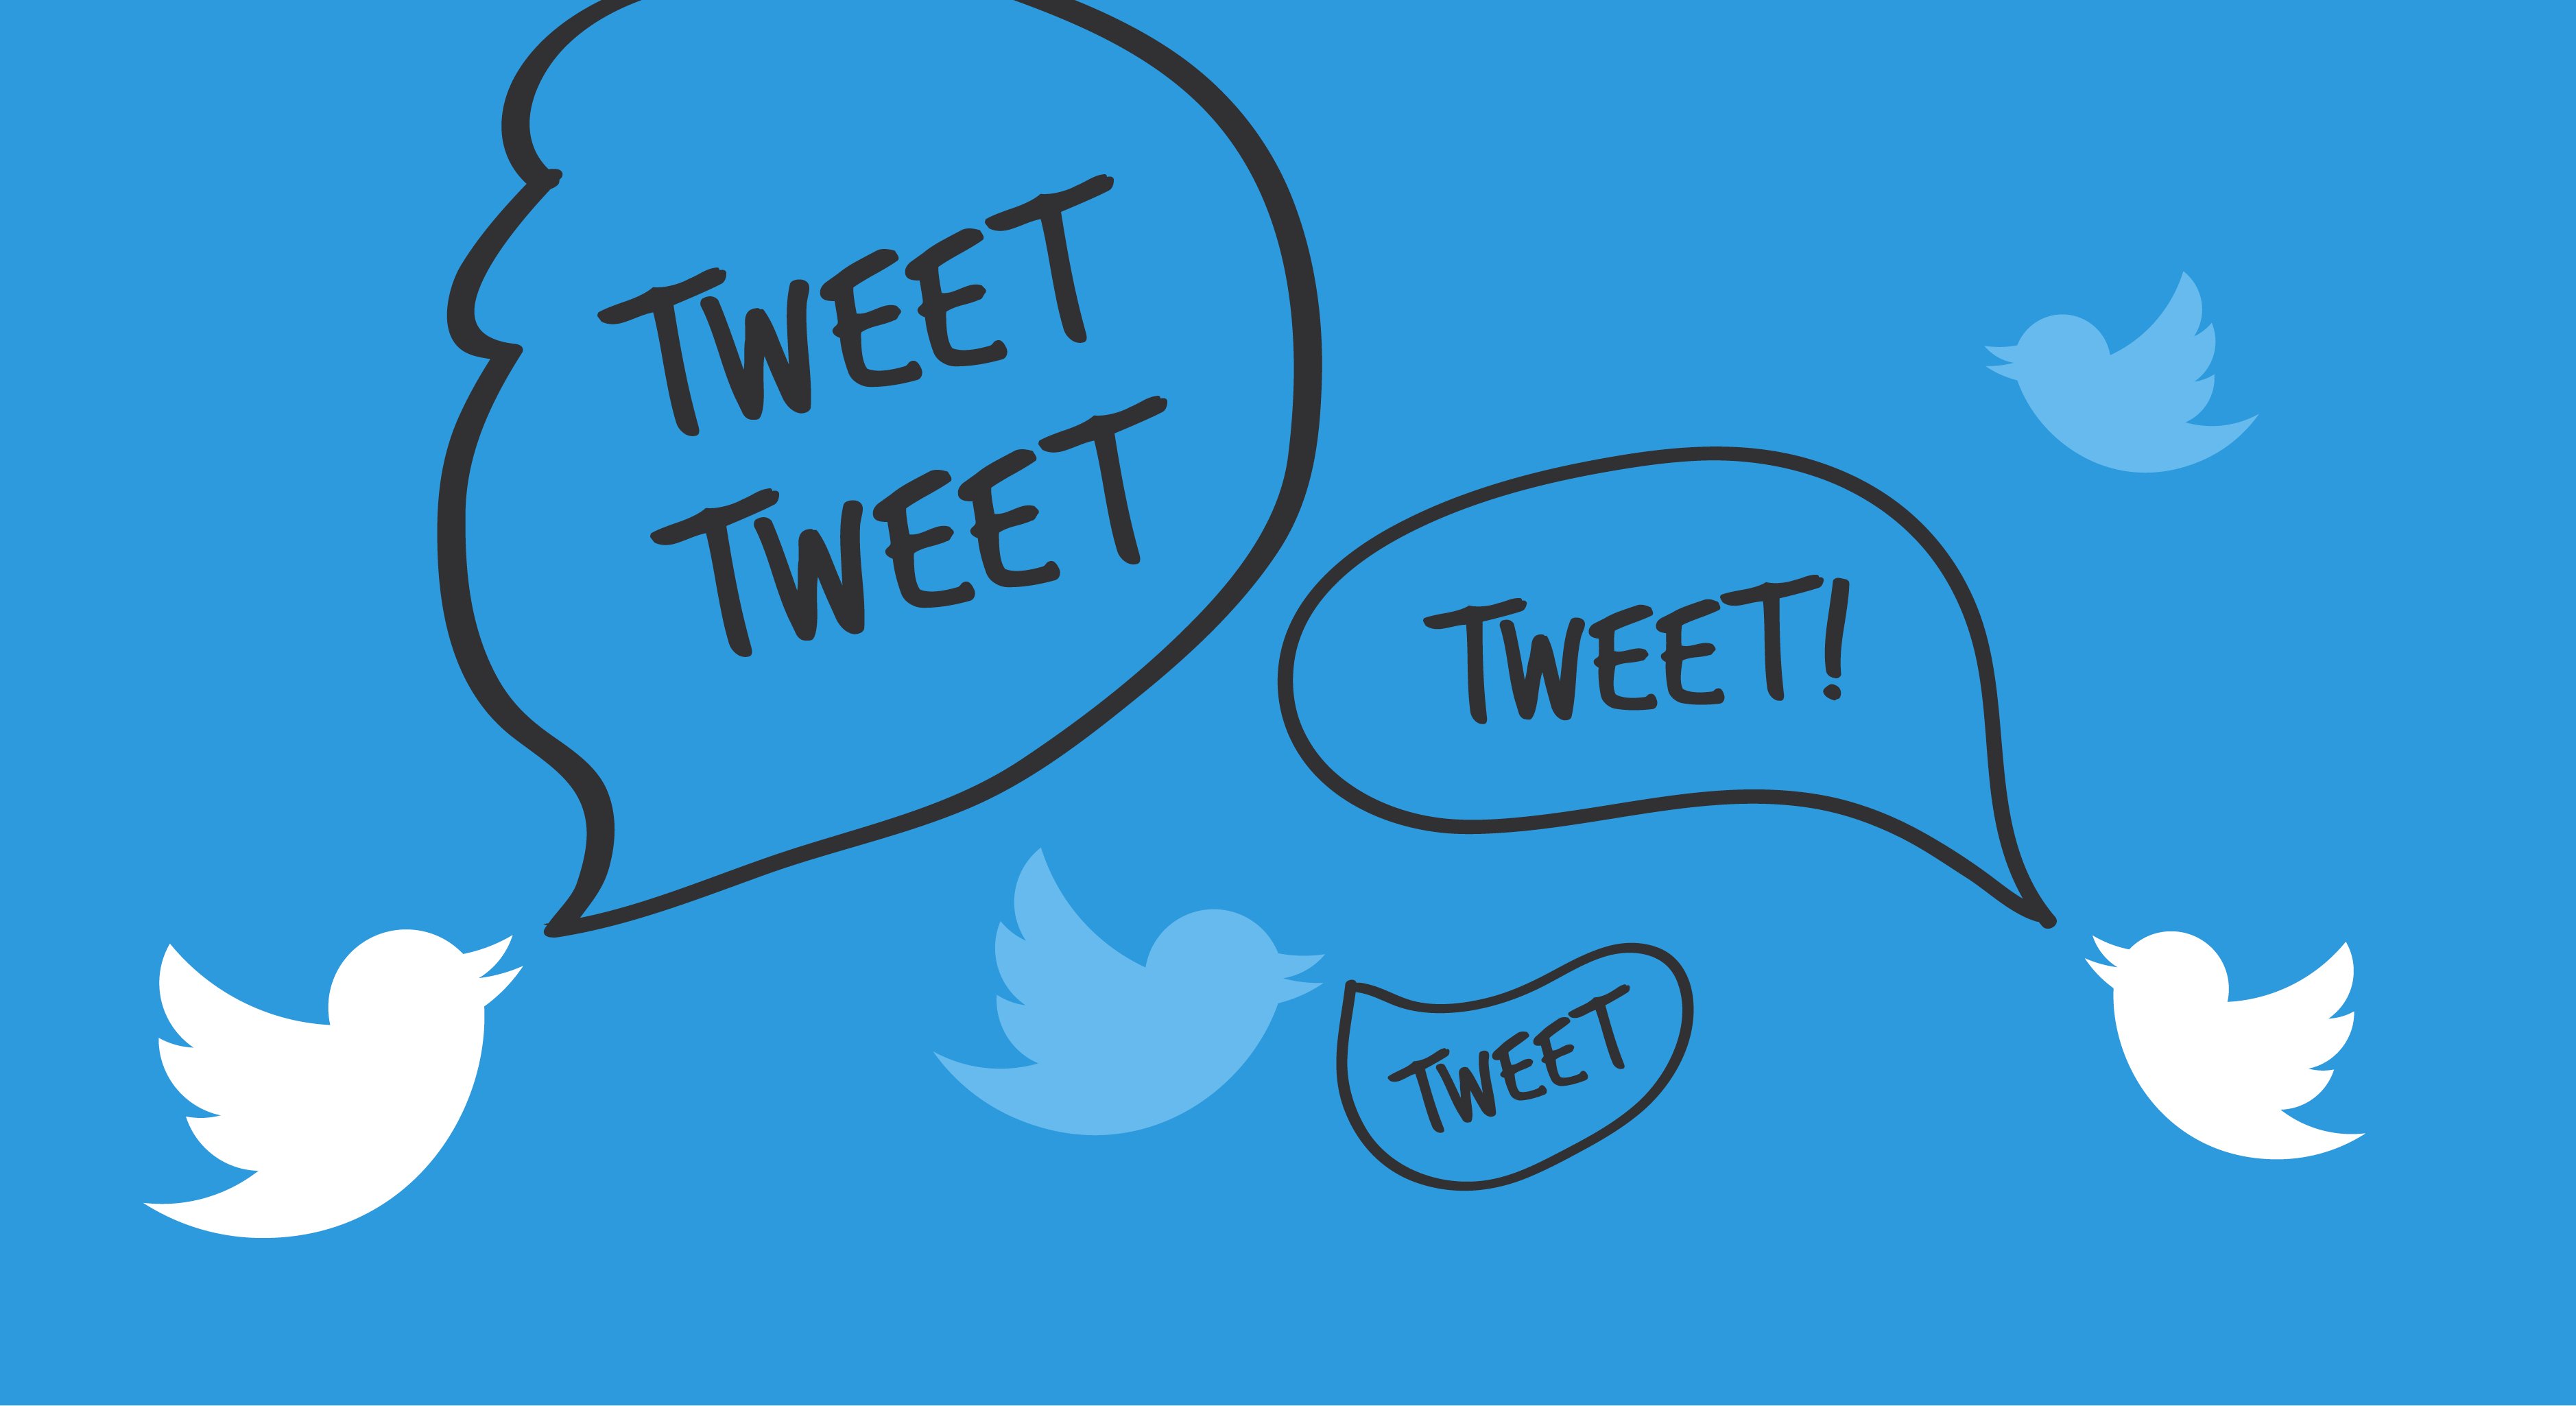 Ilustração de pássaros do Twitter piando "tweet", que significa "piu" em inglês | Twitter é a rede social mais utilizada pelas grandes empresas